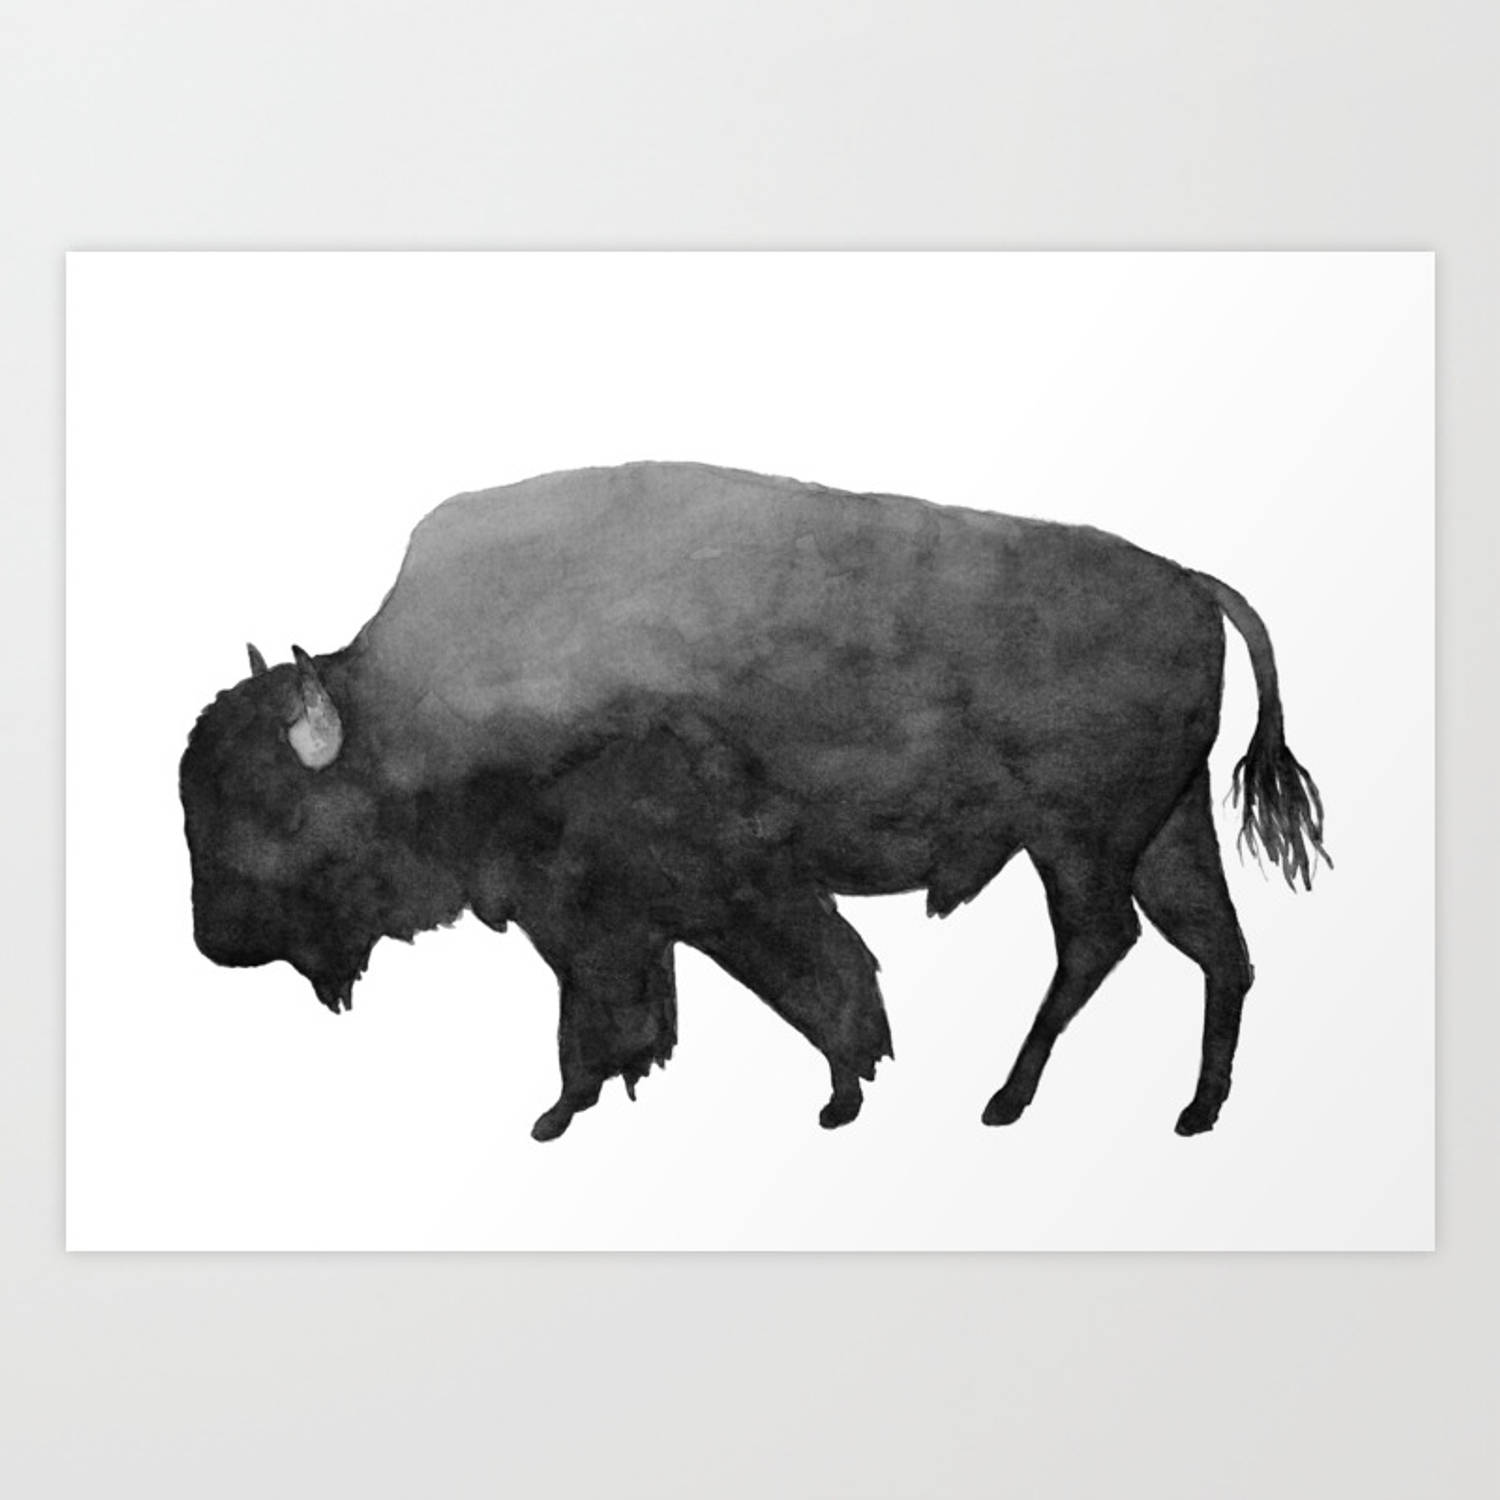 Buffalokolmålning. Wallpaper